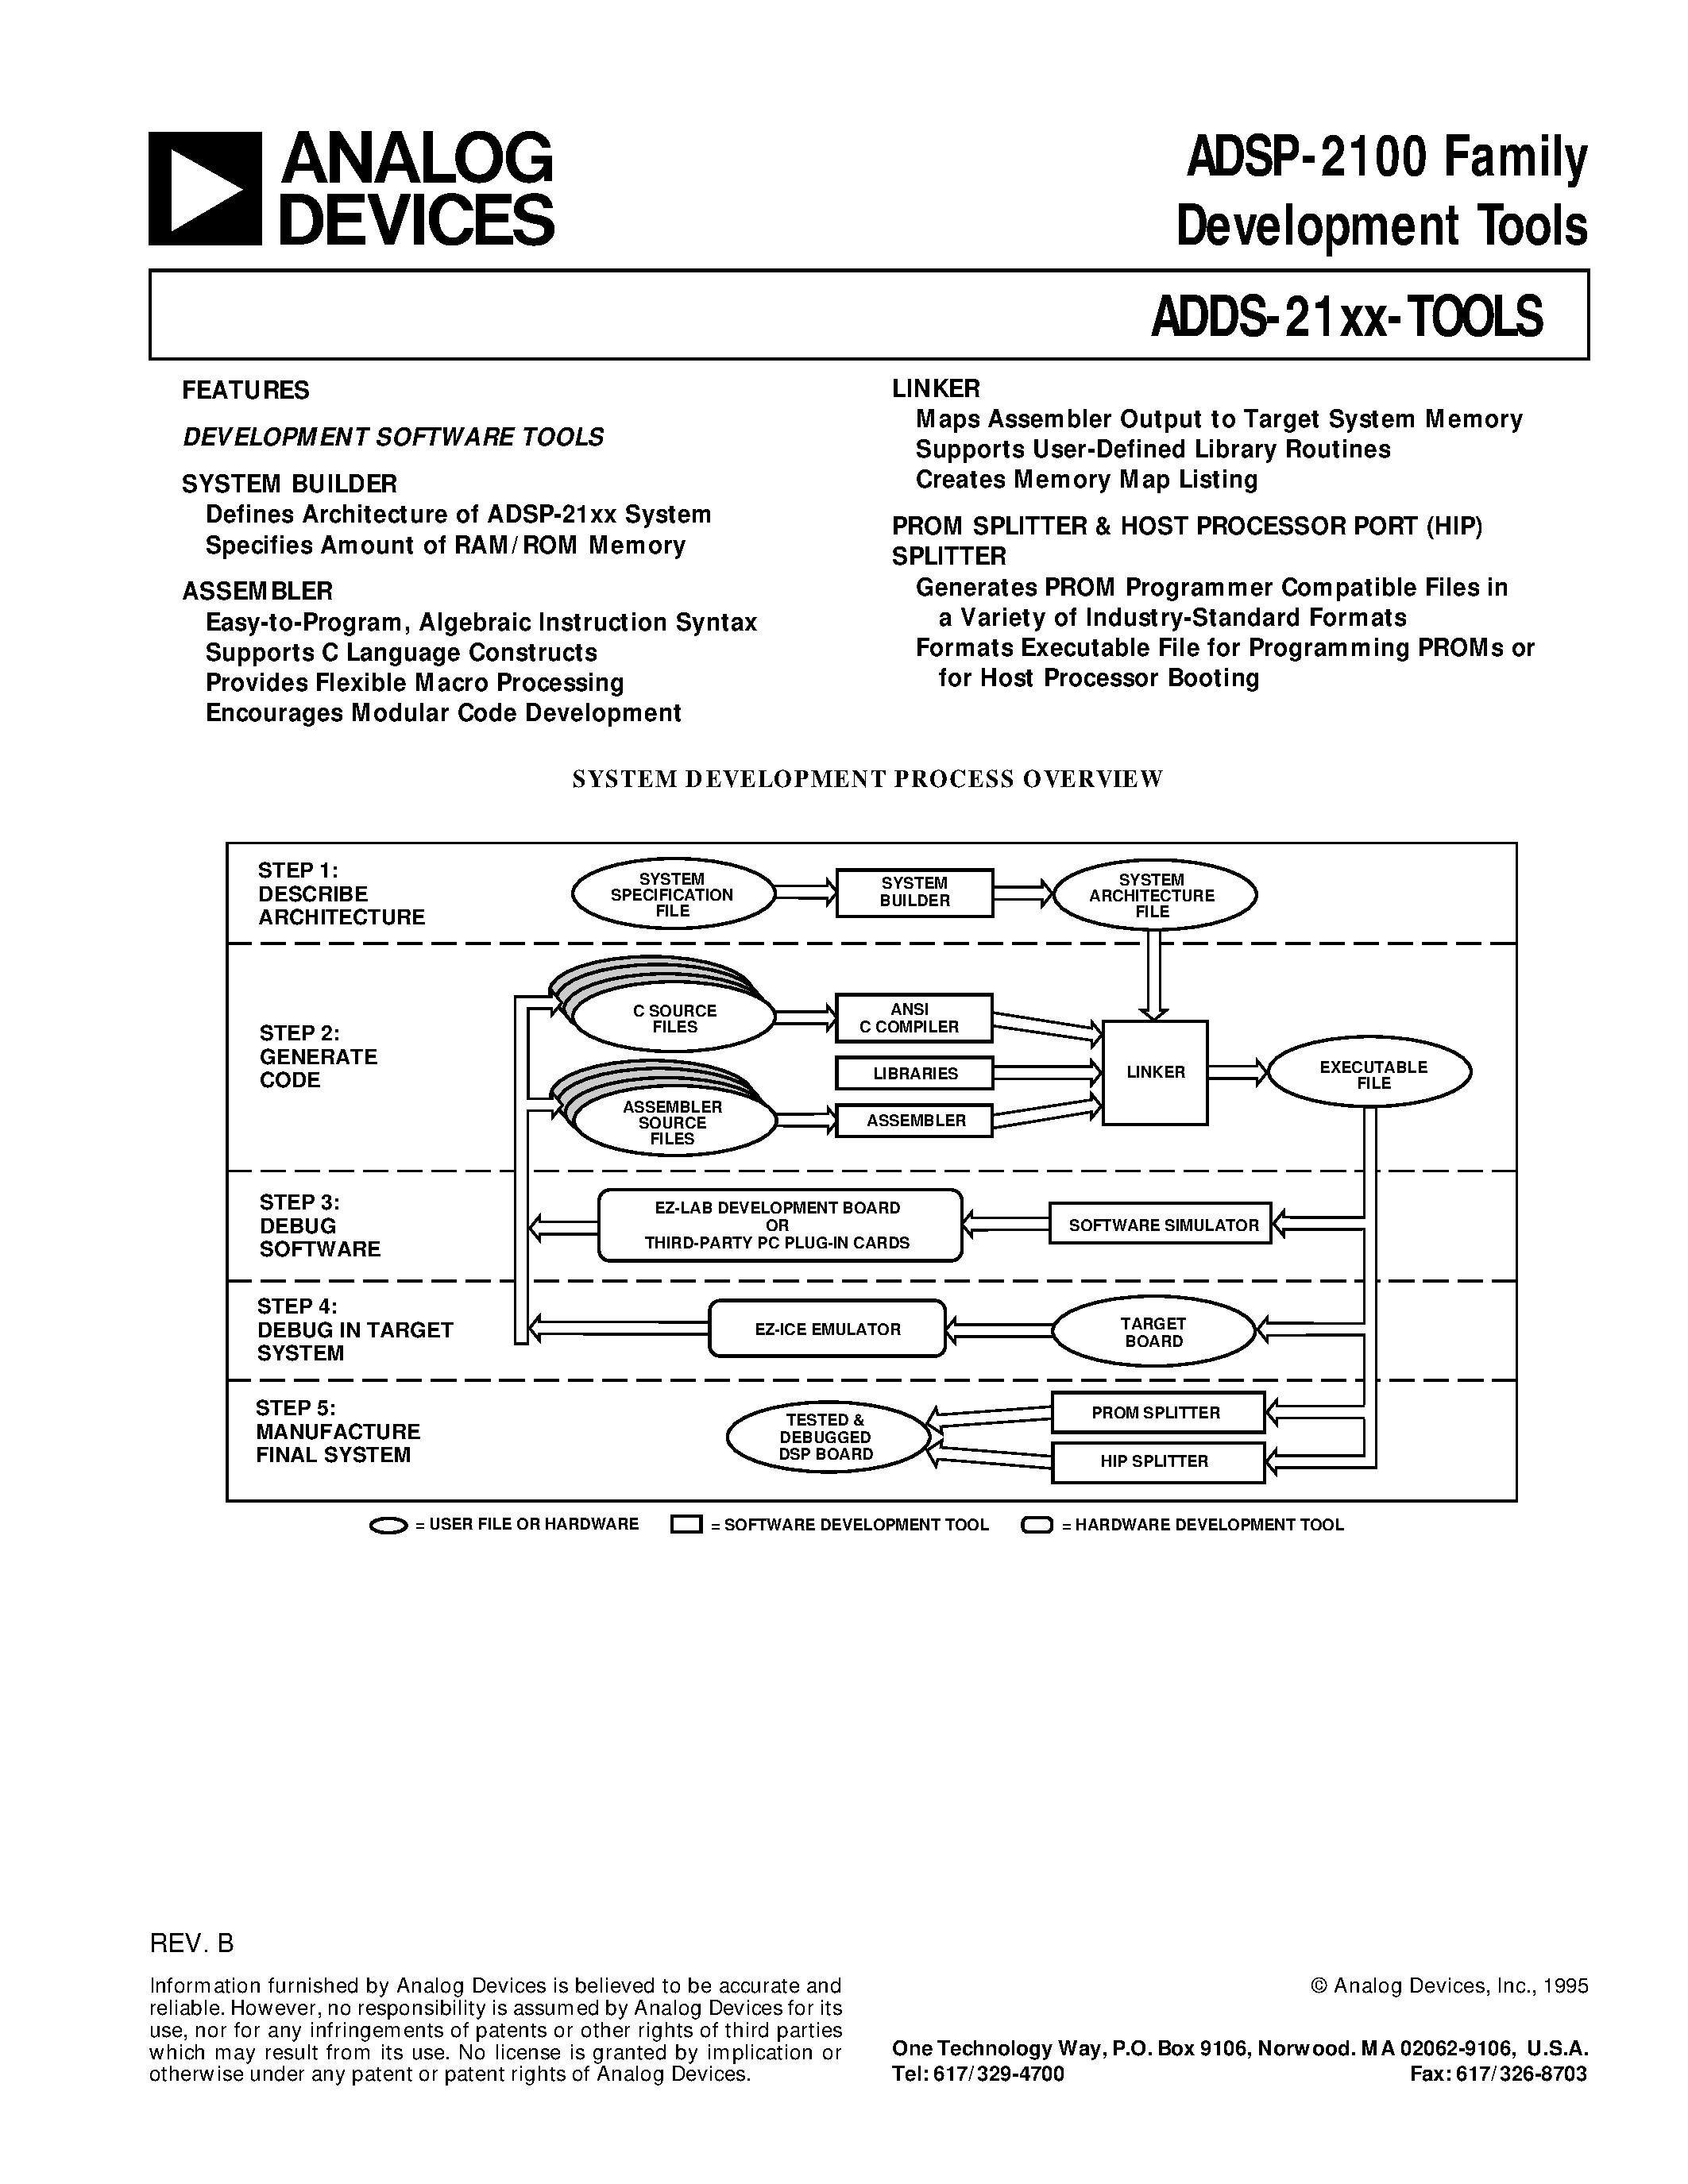 Даташит ADDS-2101-EZ-KIT - ADSP-2100 Family Development Tools страница 1